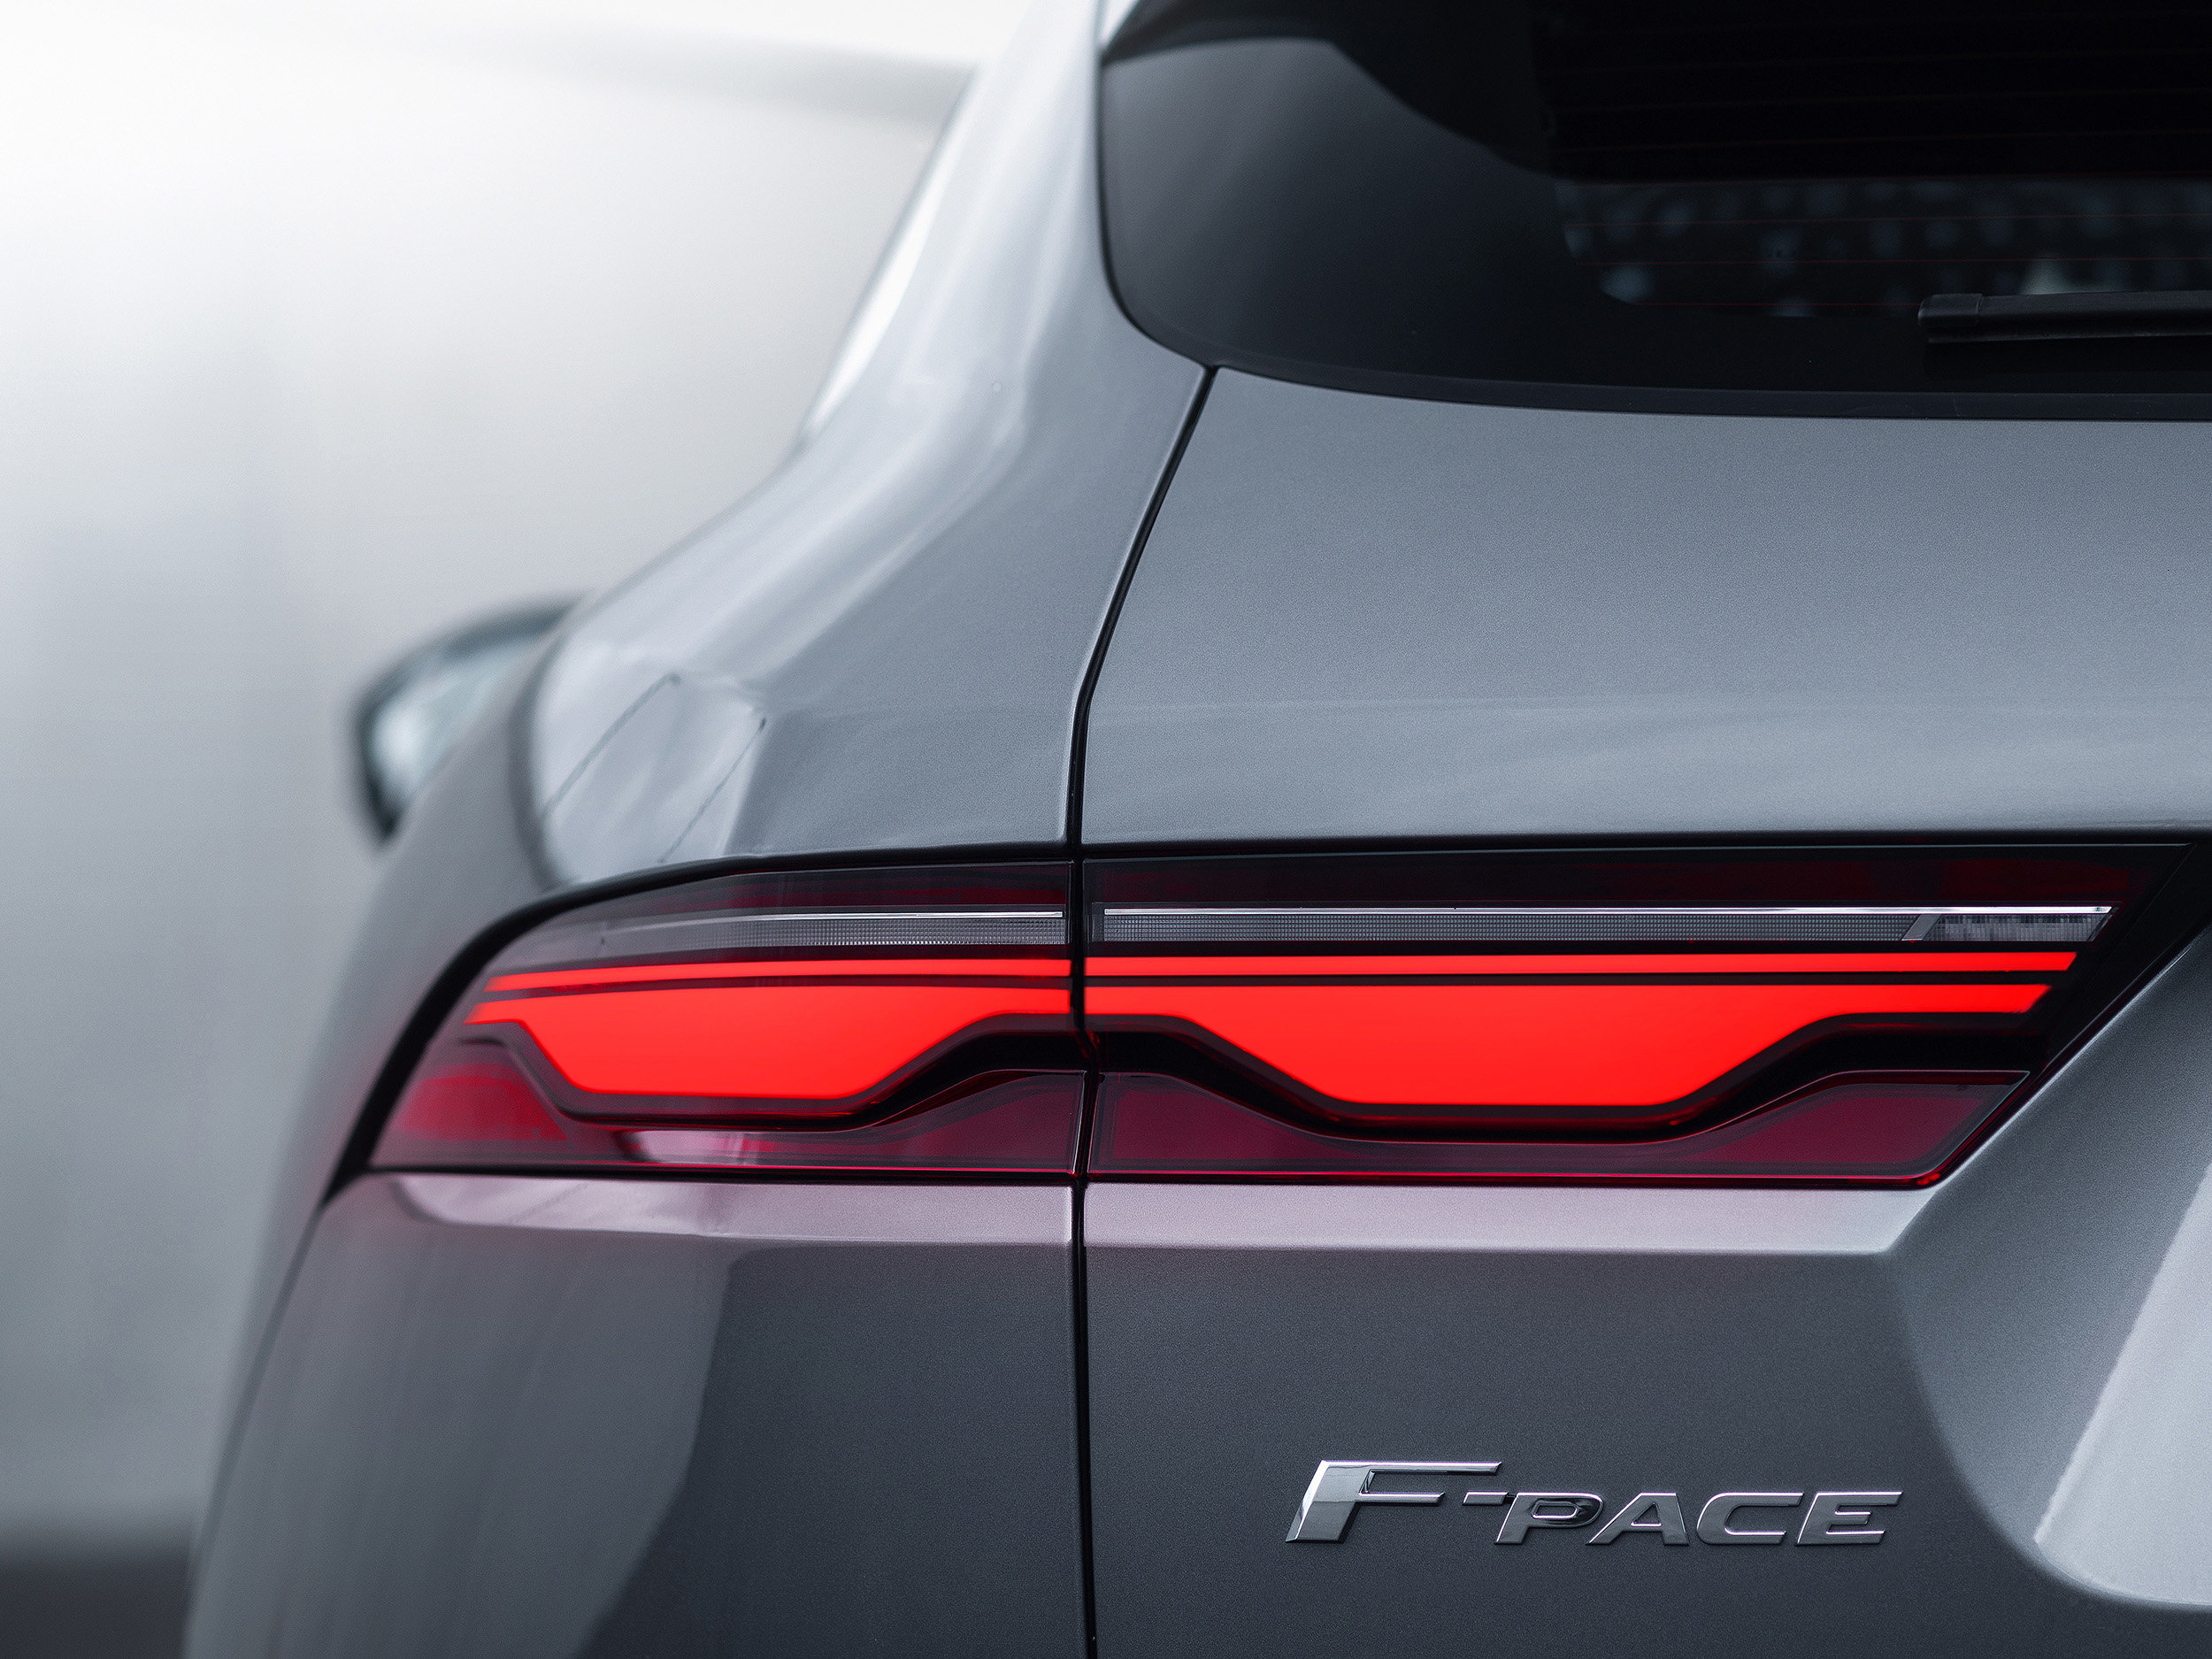 2021 Jaguar F-Pace